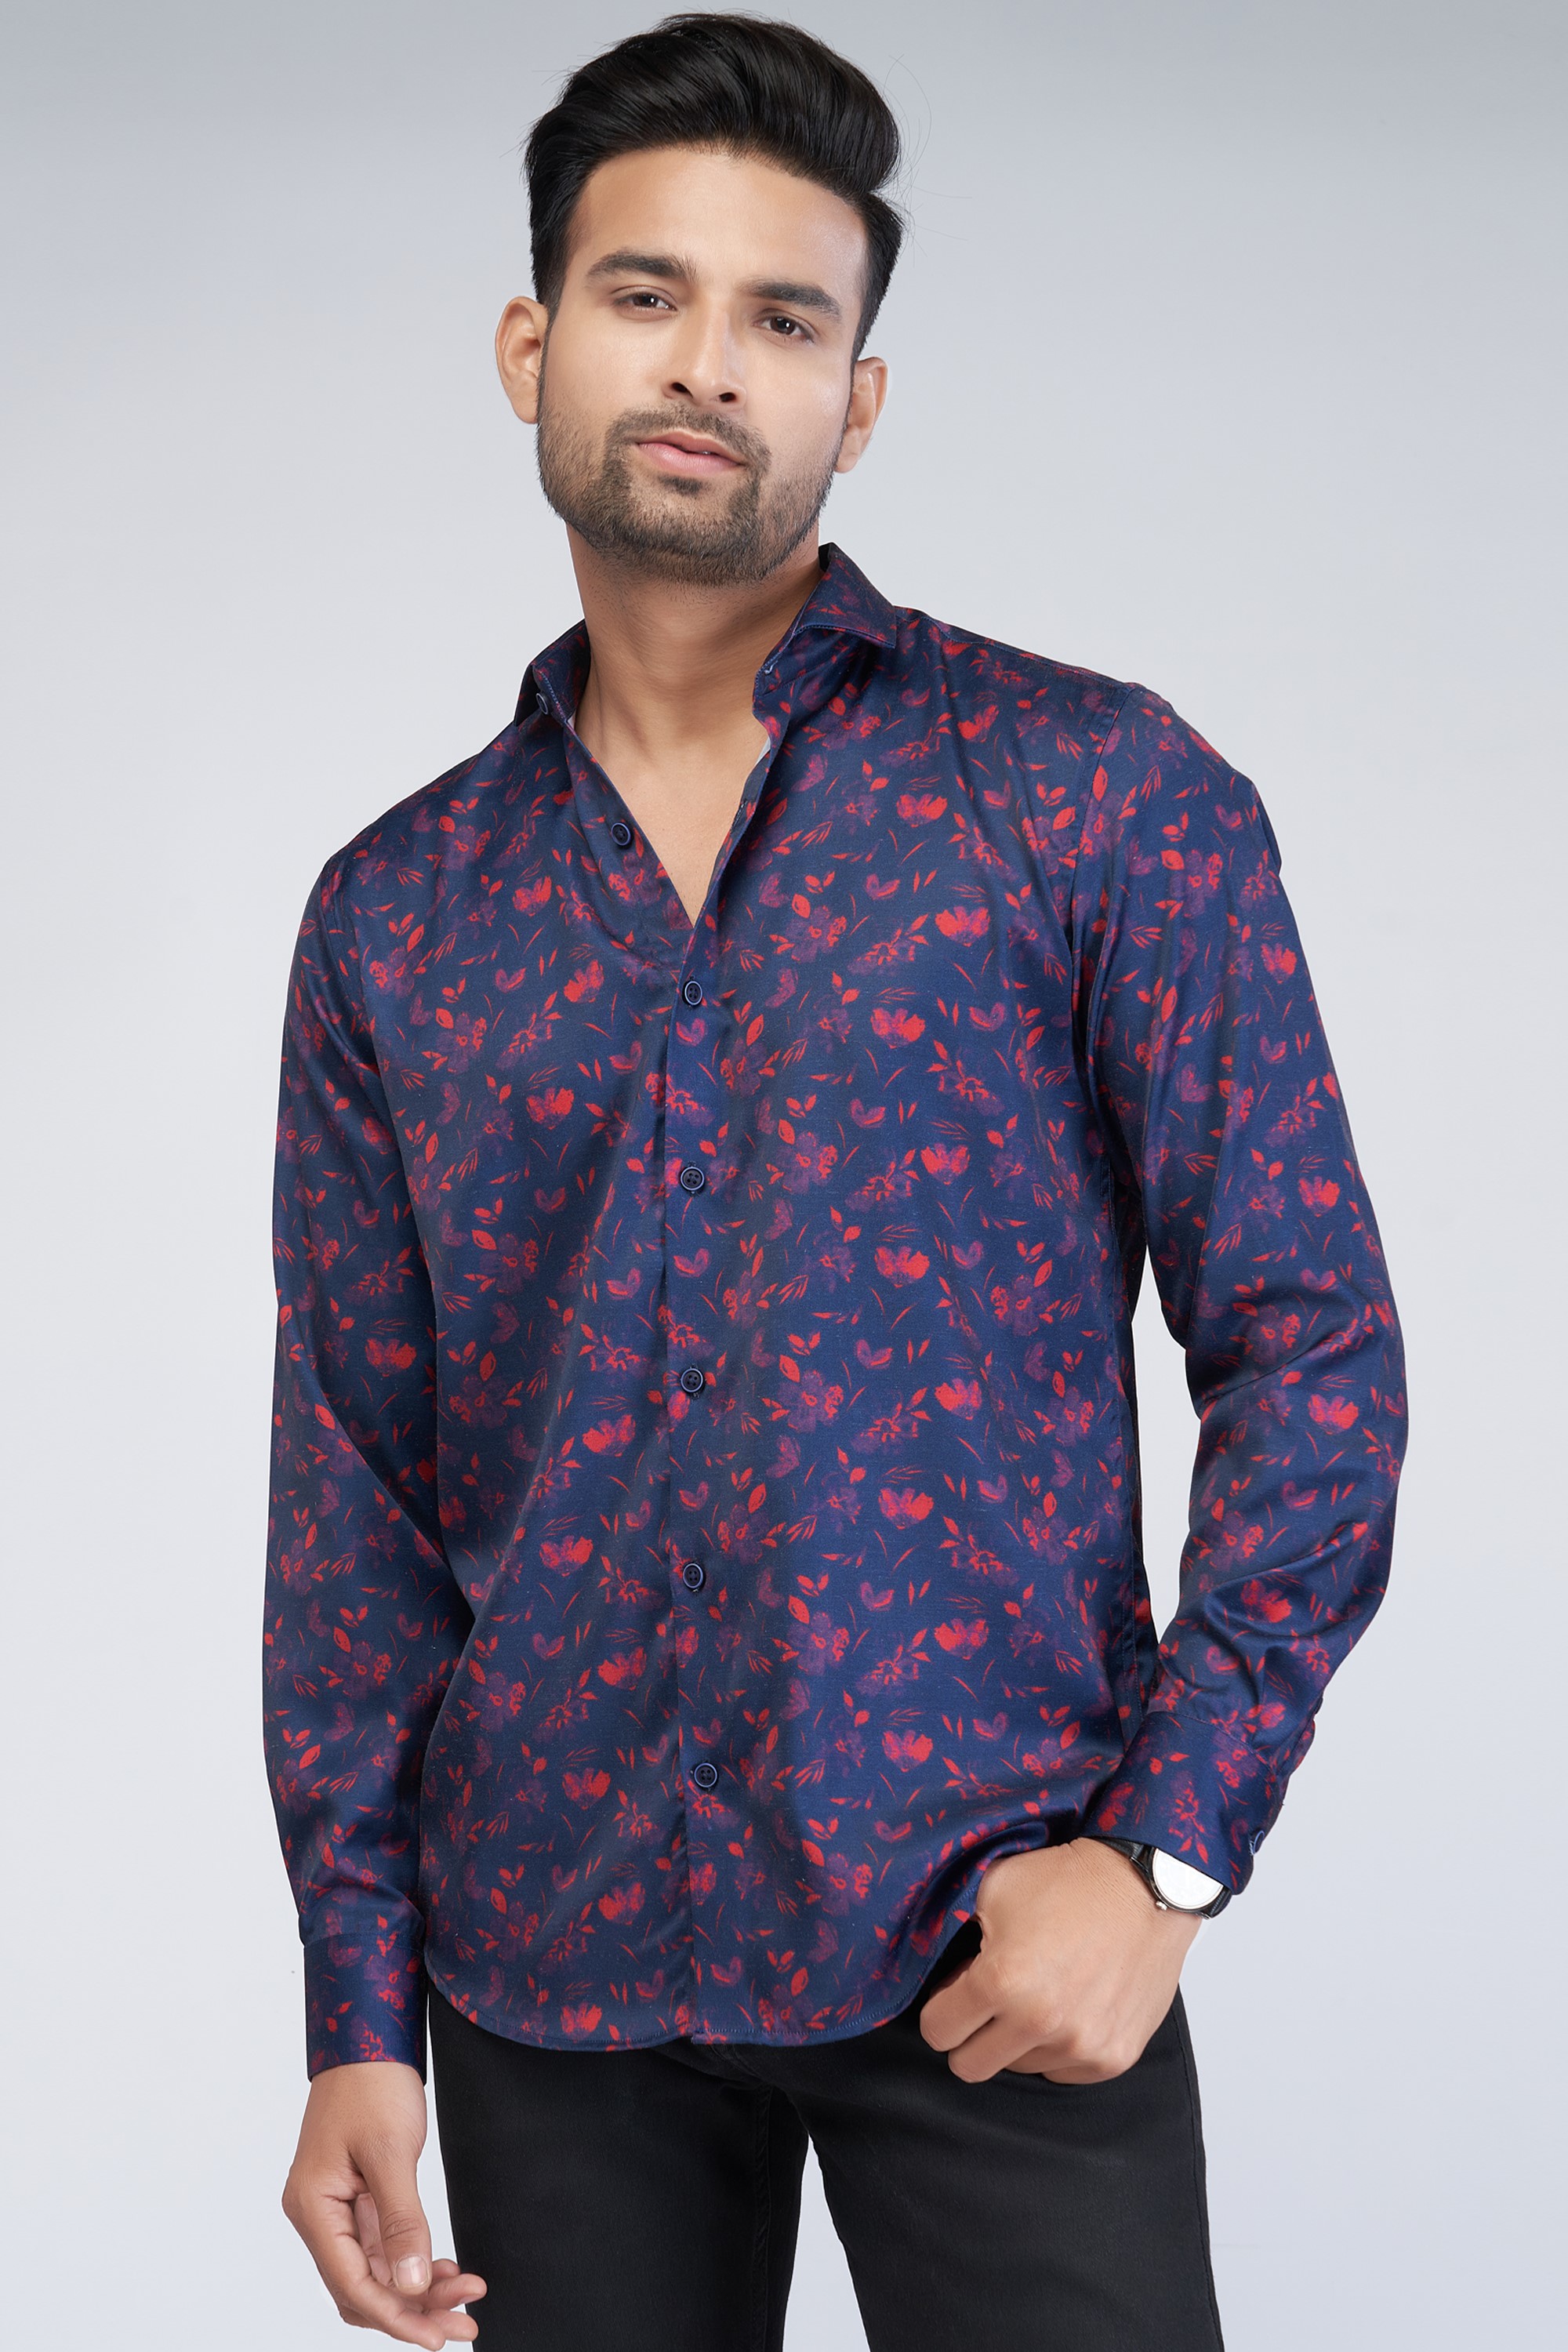 floral blue shirt for men